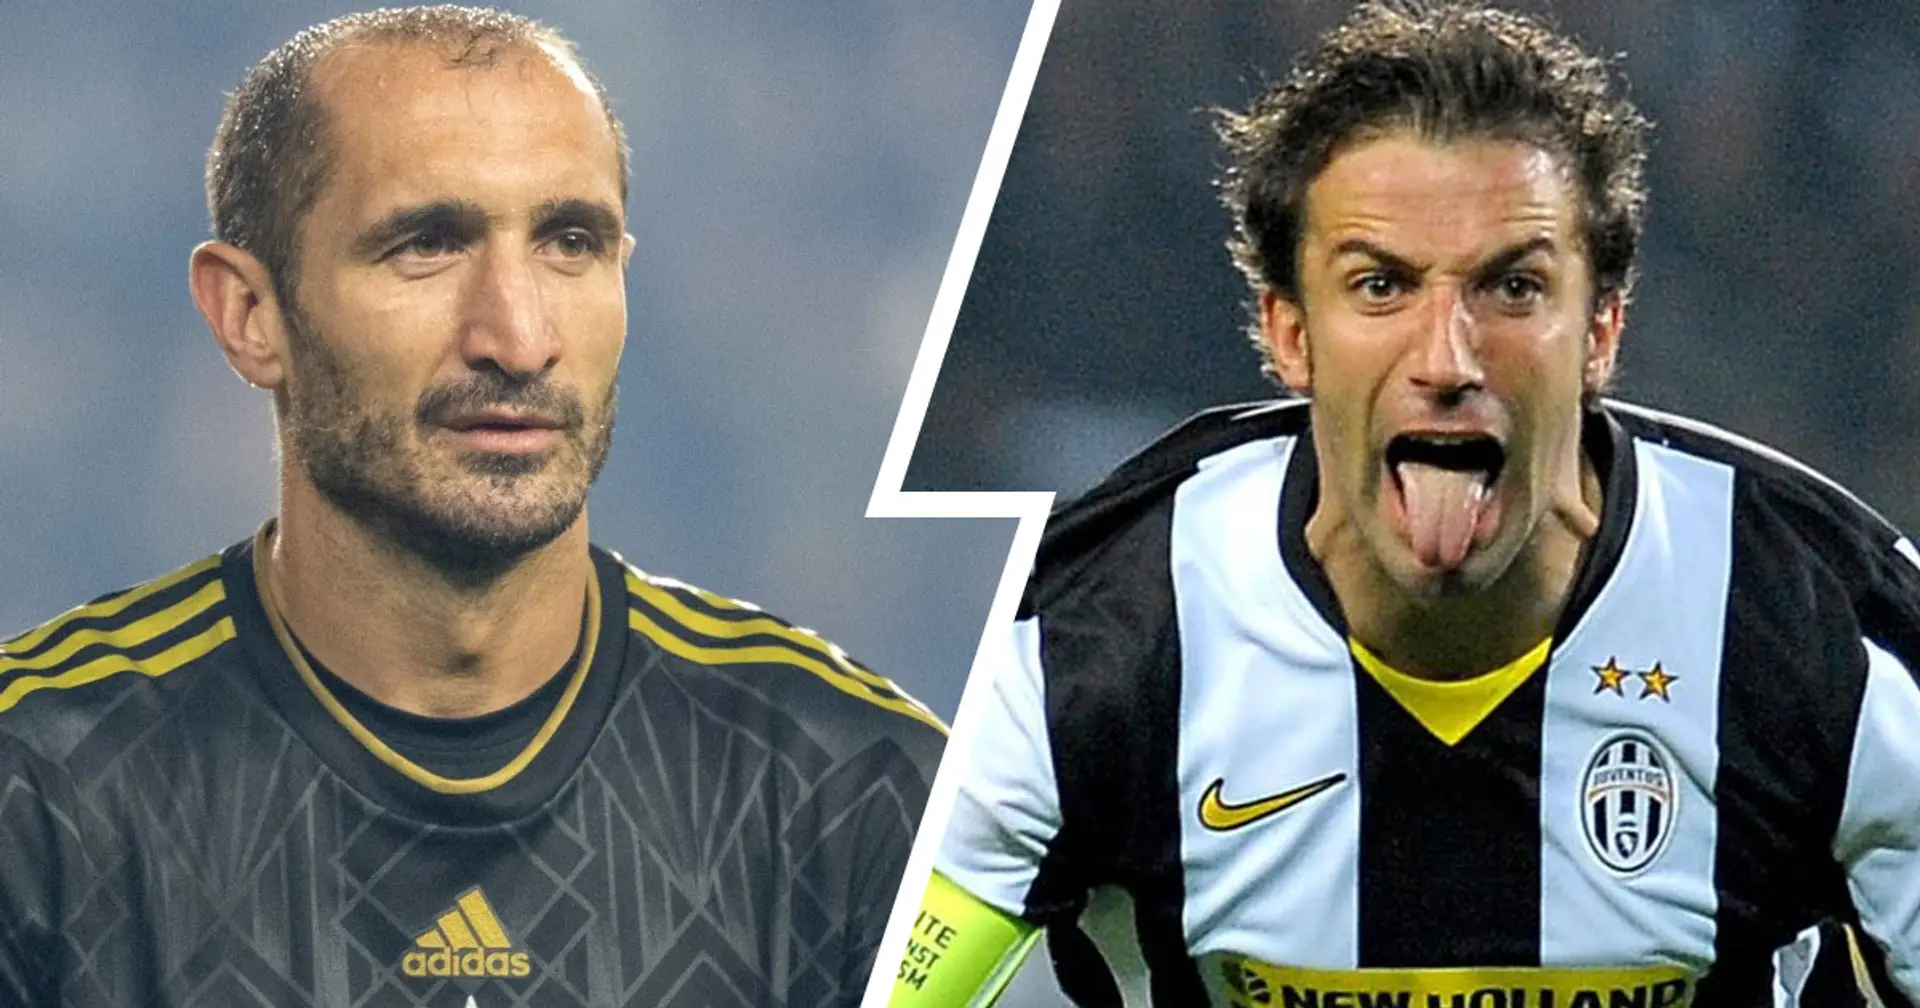 La Juventus lavoro al ritorno di una bandiera: Del Piero o Chiellini? Svelato il nome in pole position per la dirigenza